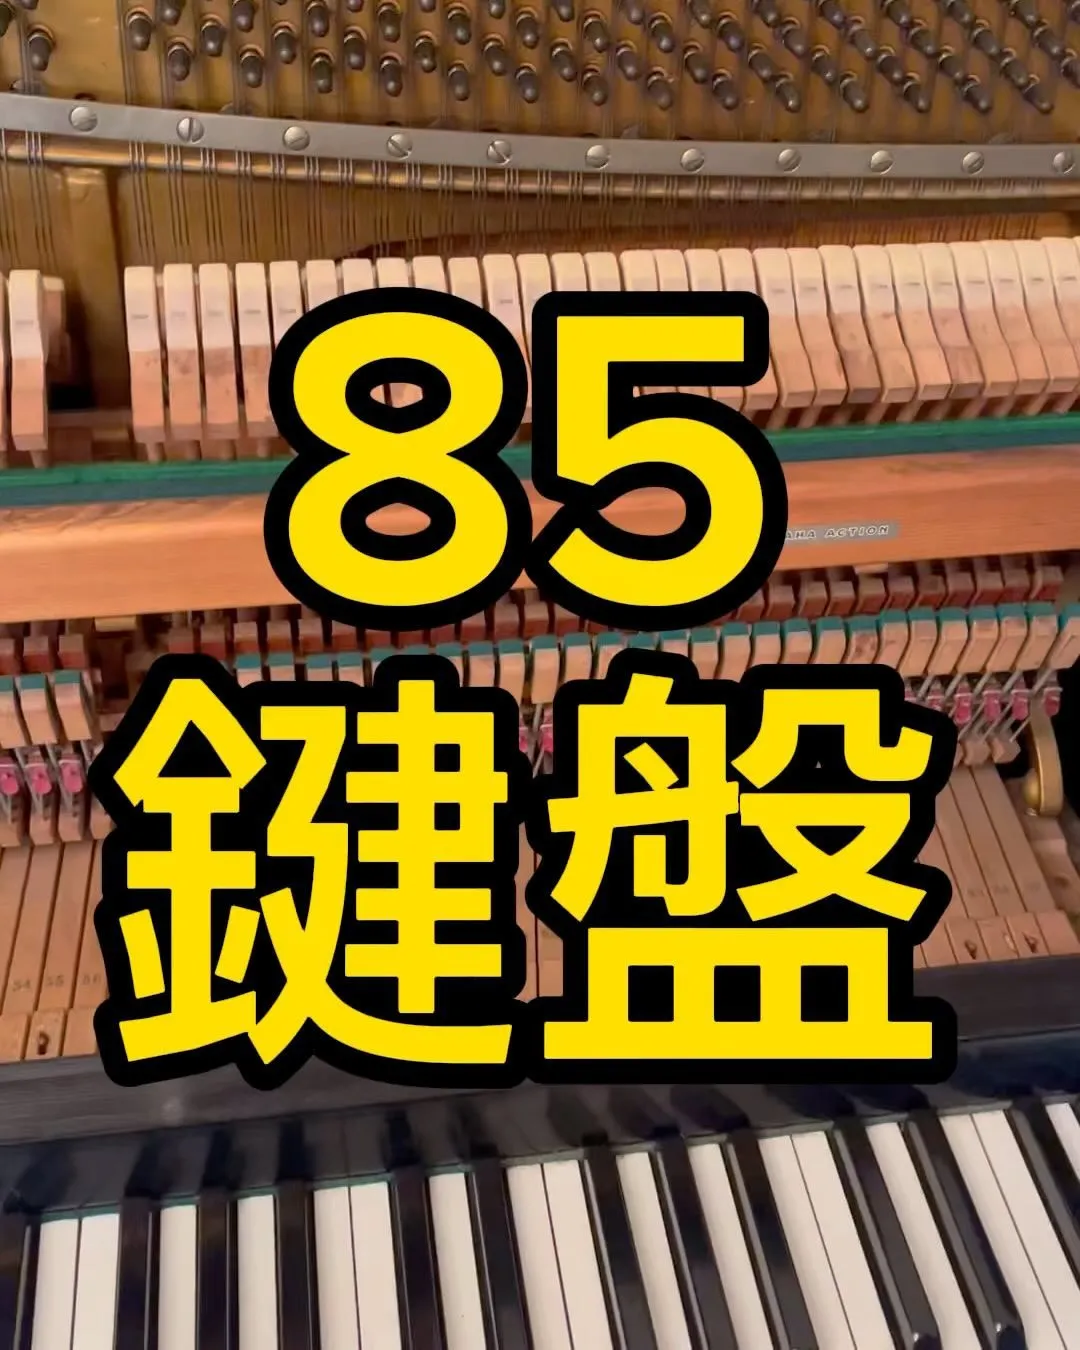 85鍵盤のピアノ調律